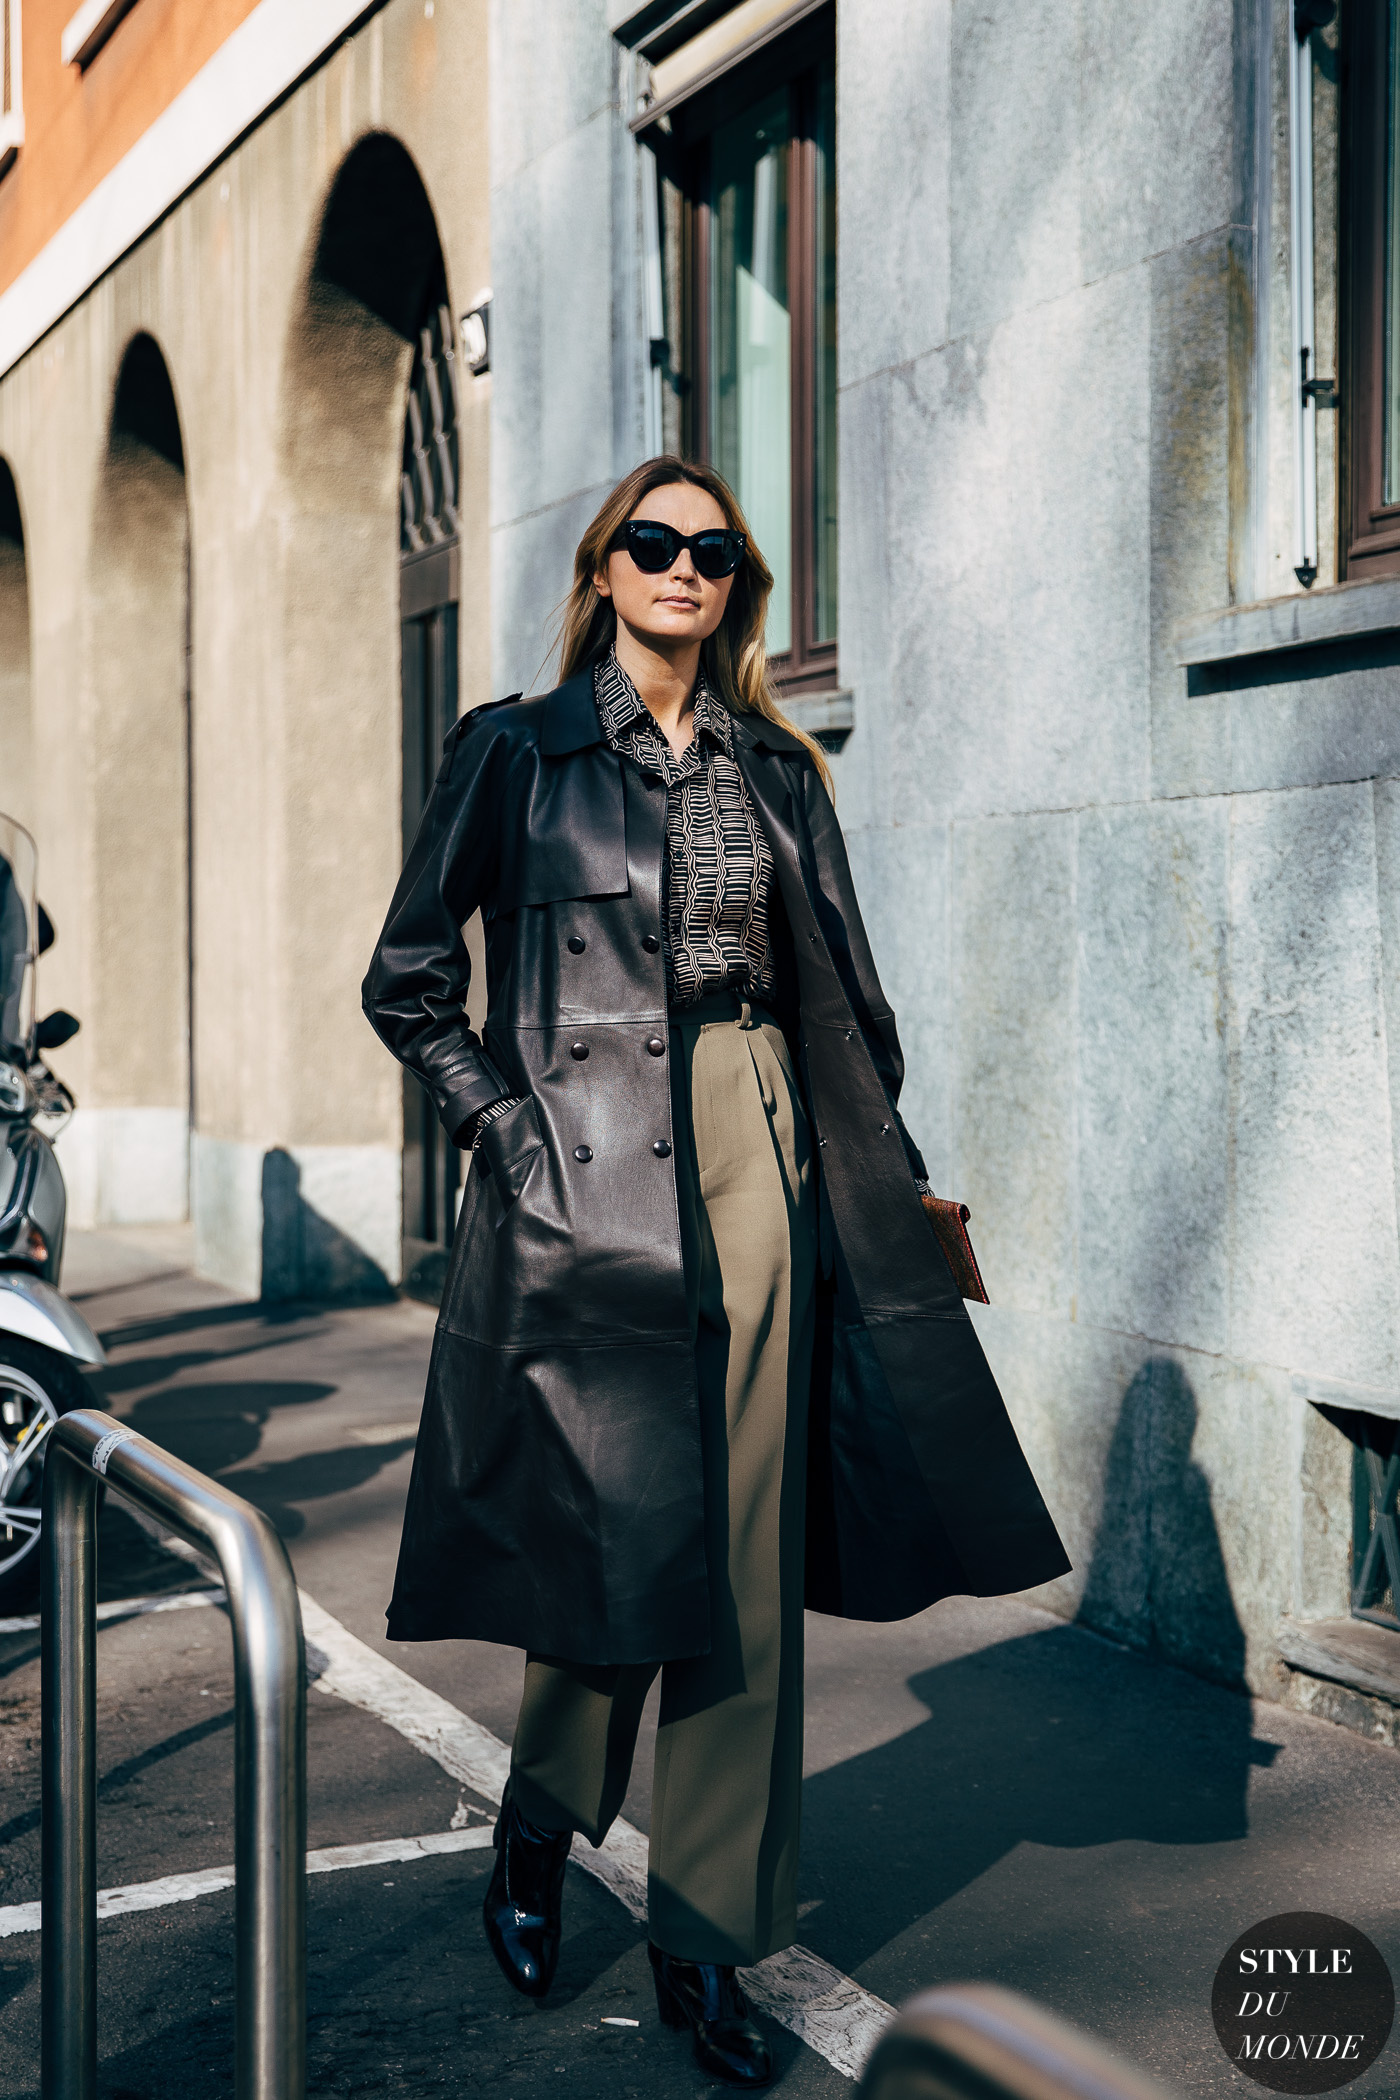 Milan FW 2019 Street Style: Jane McFarland